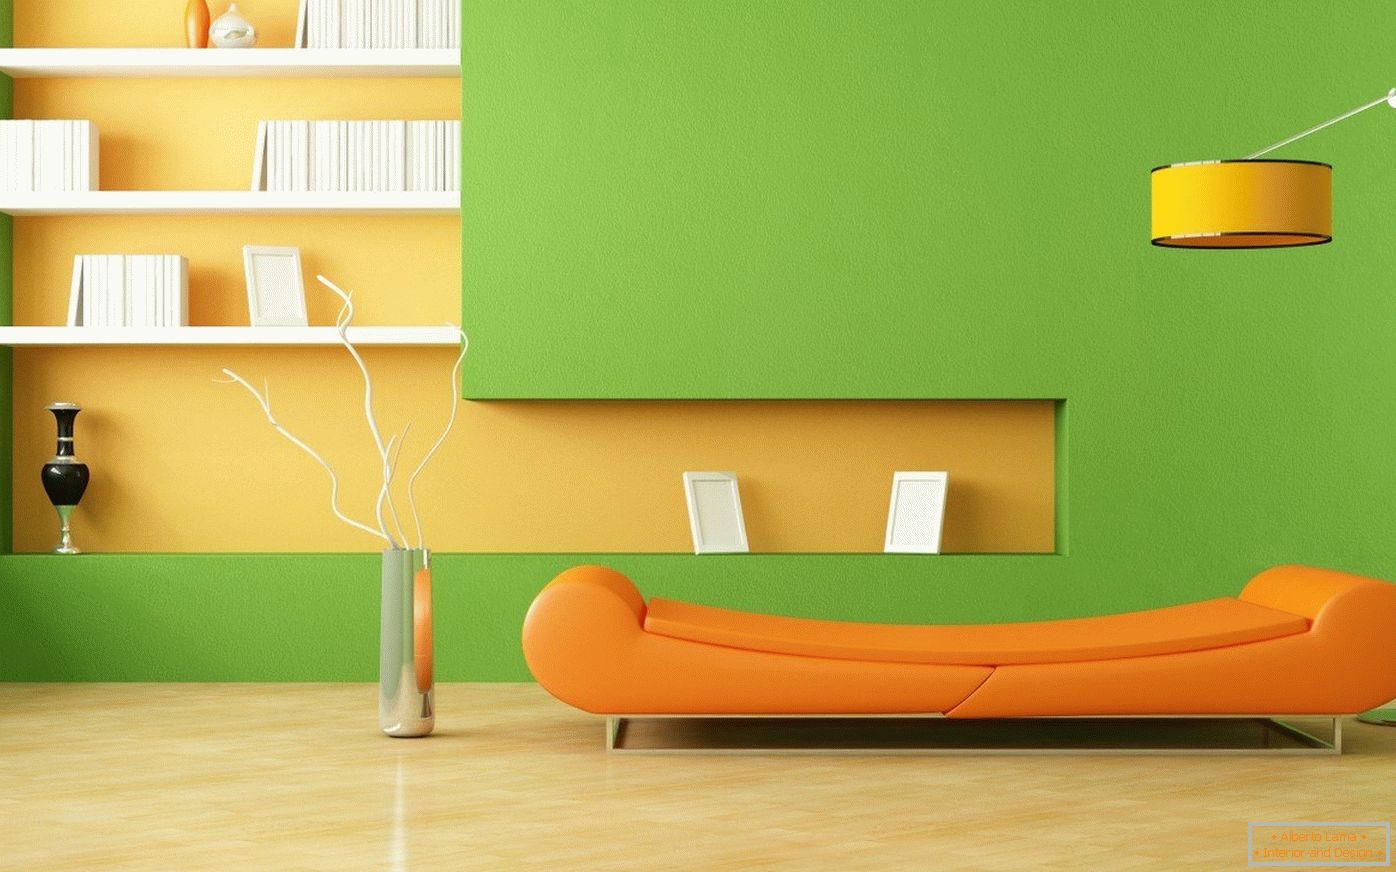 Canapé orange et murs verts